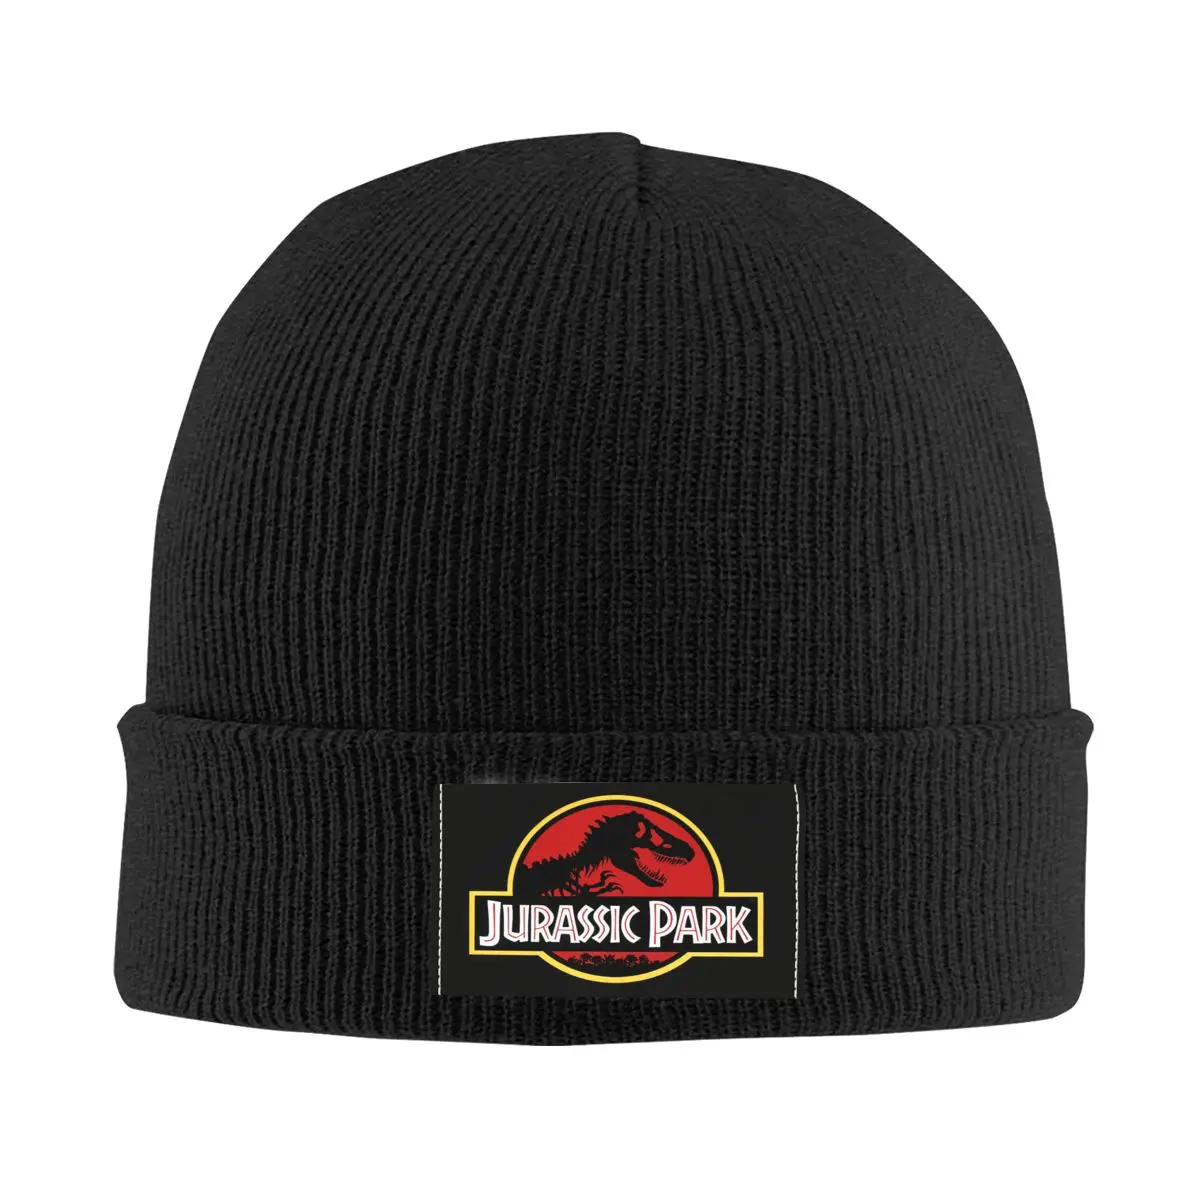 

Jurassic Park Skullies Beanies Caps Hip Hop Winter Warm Women Men Knitted Hats Adult Unisex Sci Fi Dinosaur Bonnet Hats